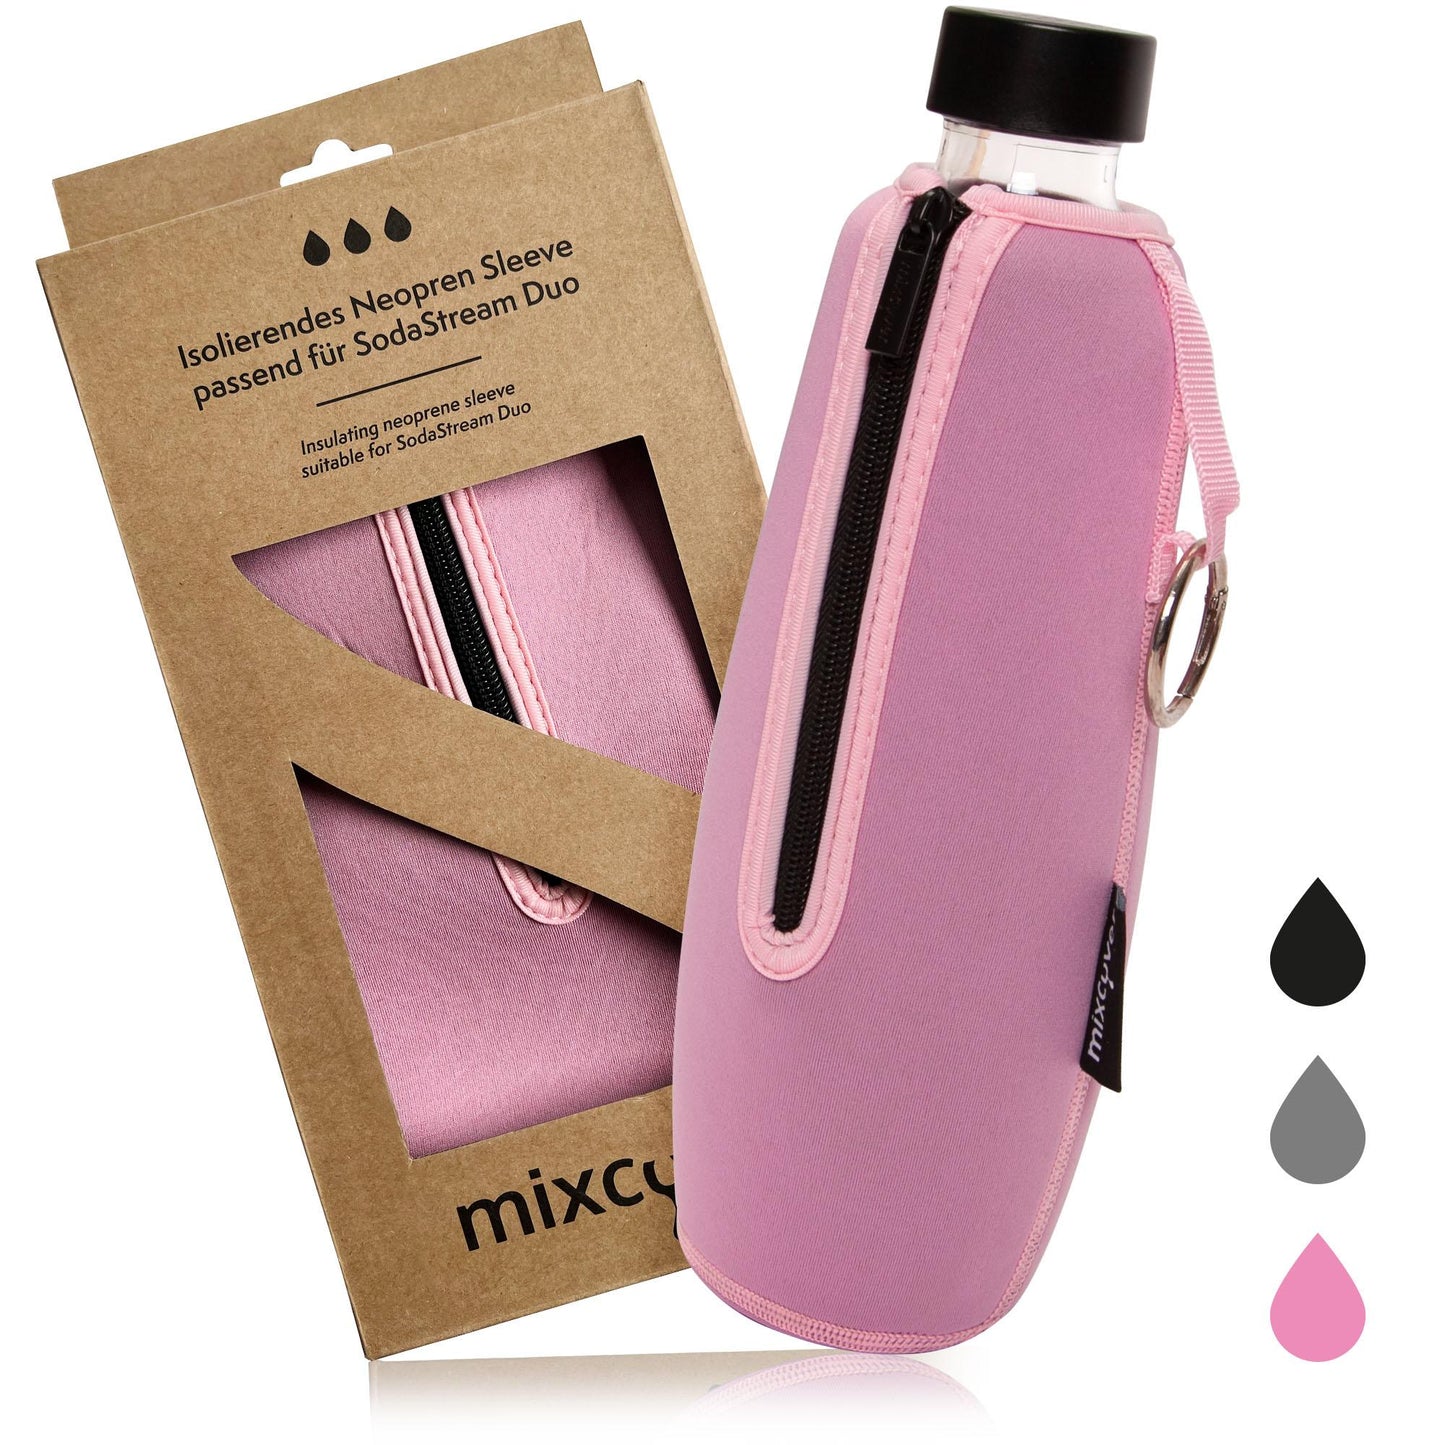 mixcover isolierter Flaschenschutz Sleeve kompatibel mit SodaStream Duo Glasflaschen Schutzhülle für Flaschen, Schutz vor Bruch und Kratzern, Farbe Pink